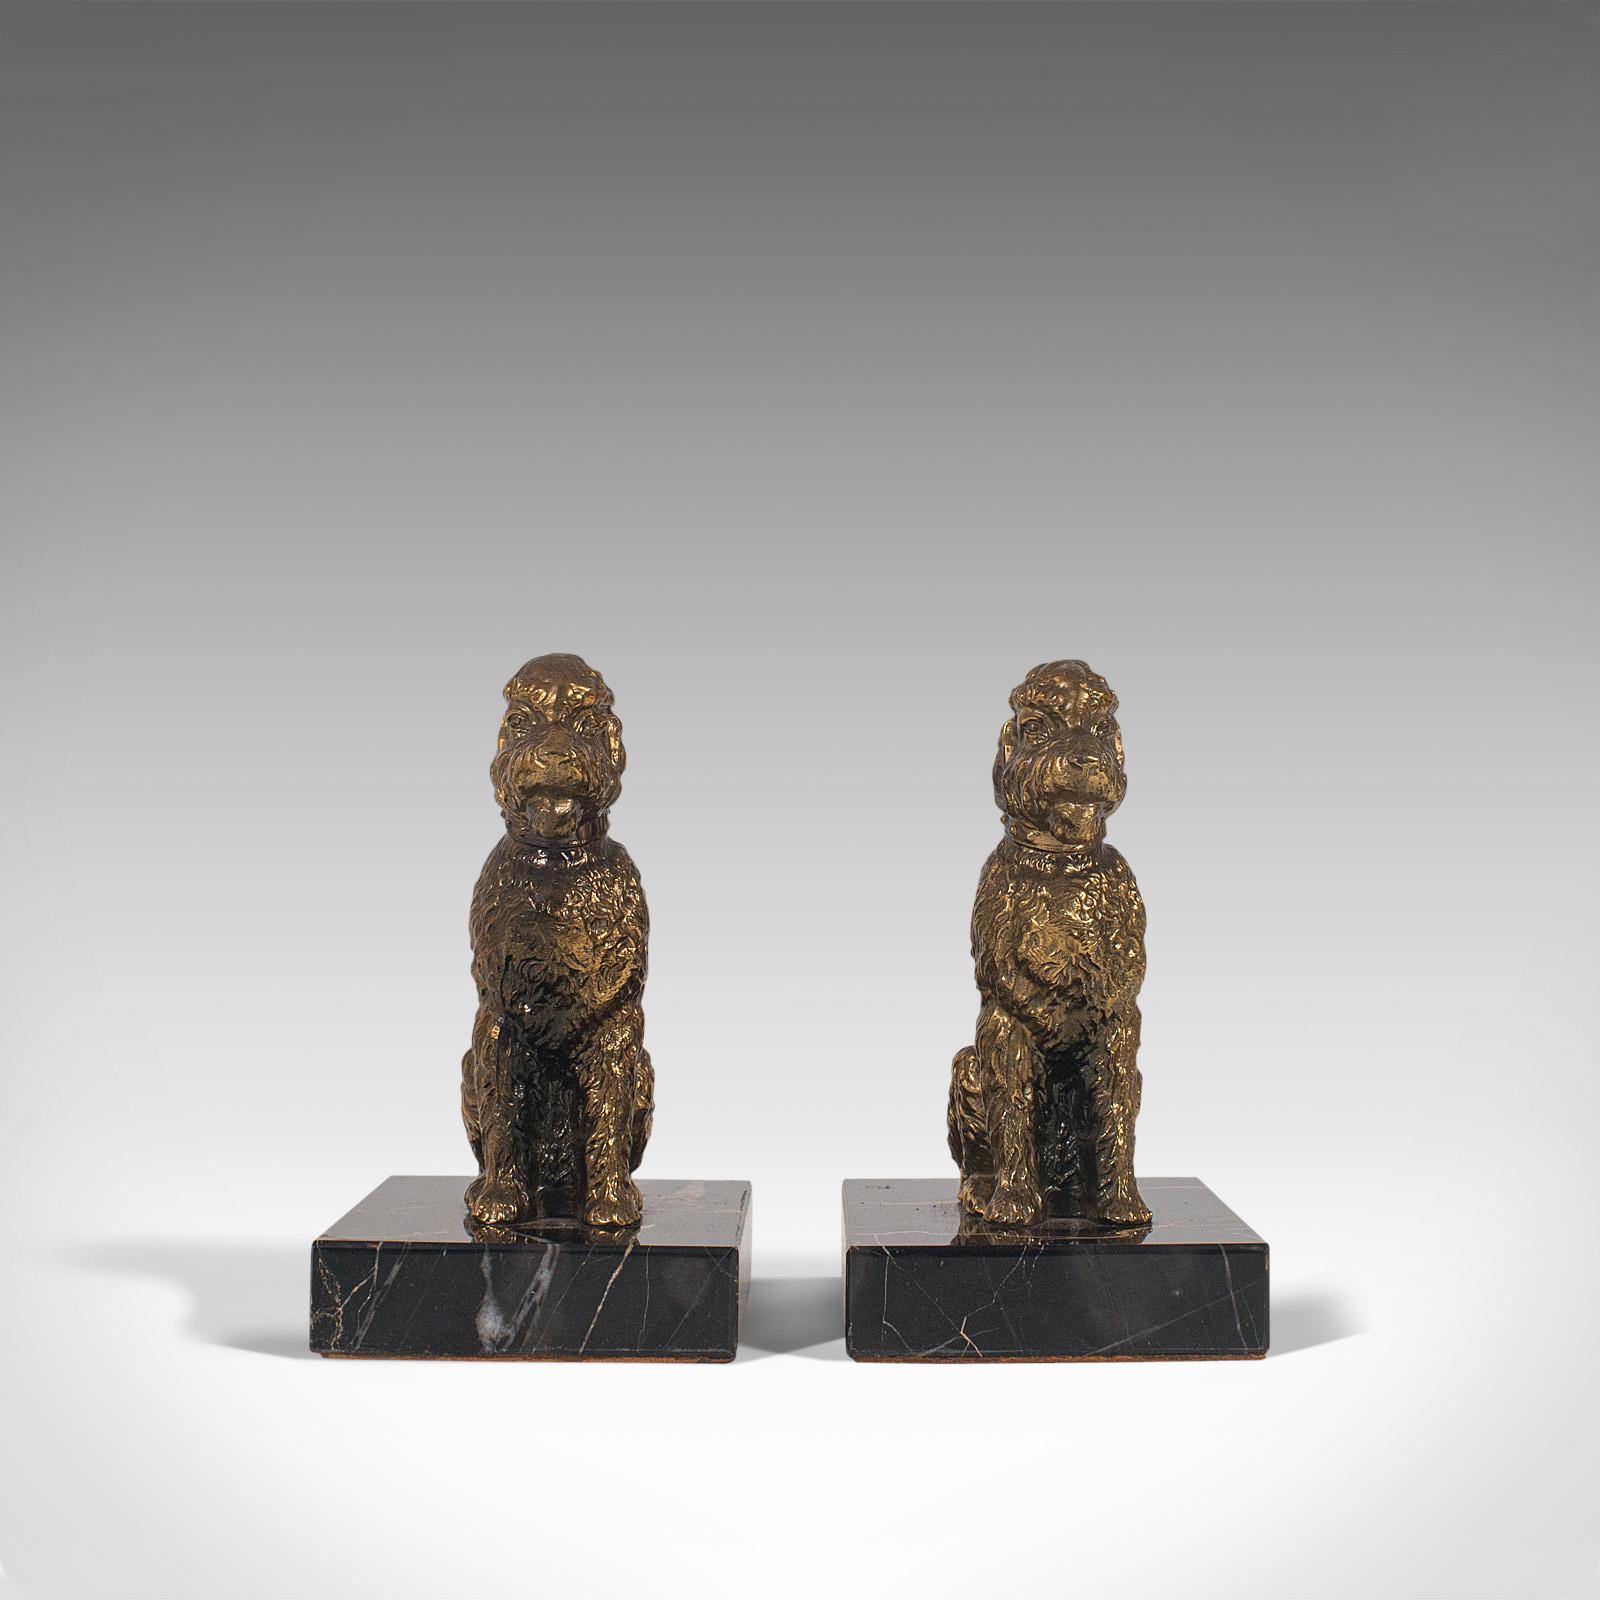 Il s'agit d'une paire de figurines de chiens vintage. Une étude anglaise en métal doré de l'adorable Airedale Terrier sur une base en marbre, datant de la fin du 20e siècle, vers 1980.

Des amis fidèles moulés sous forme décorative
Présentant une